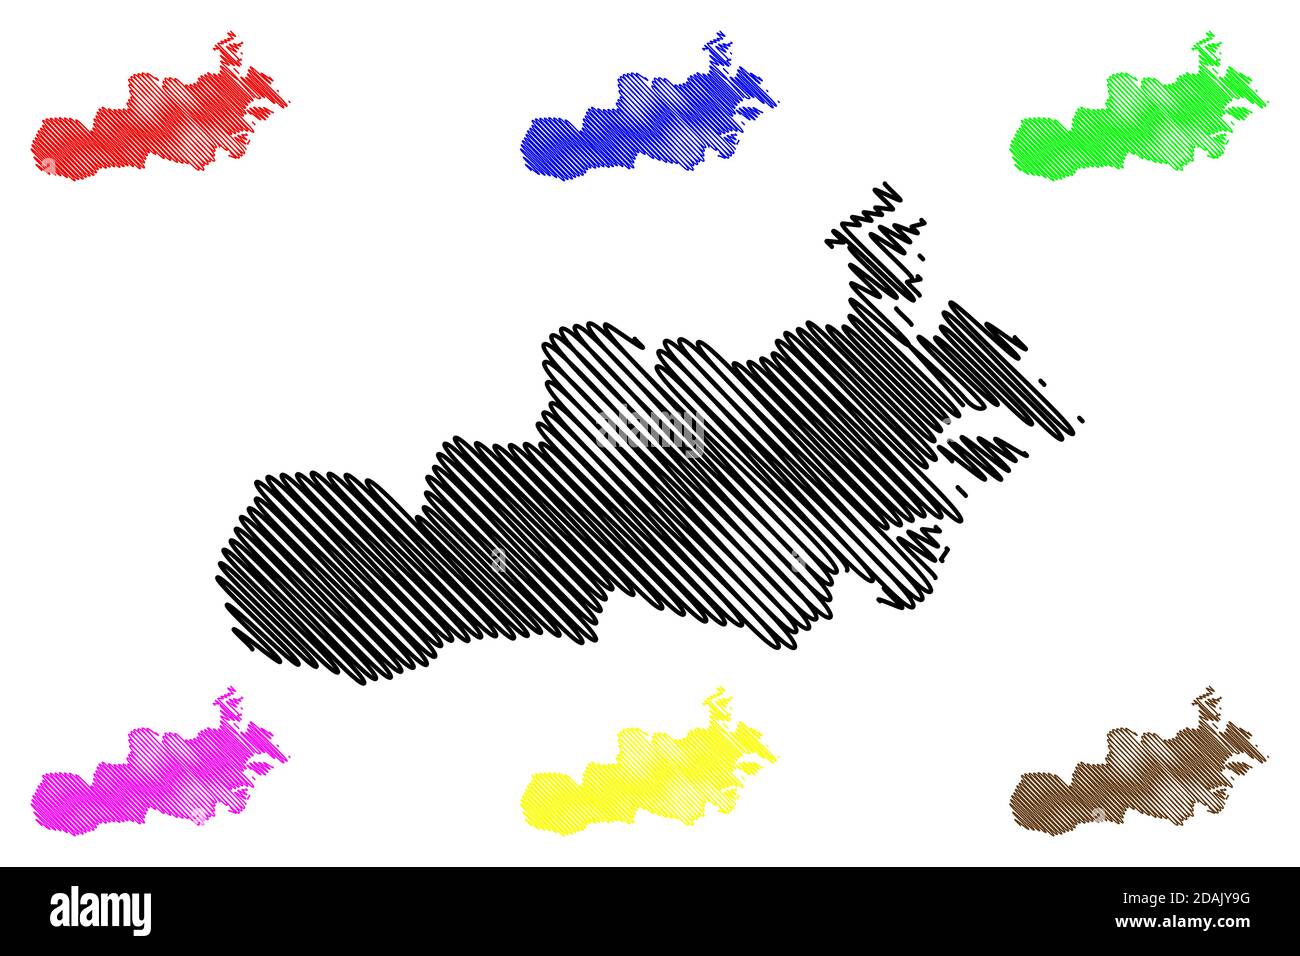 Central Region (Republic of Malta, island, archipelago, Regions of Malta) map vector illustration, scribble sketch Regjun Centrali map Stock Vector